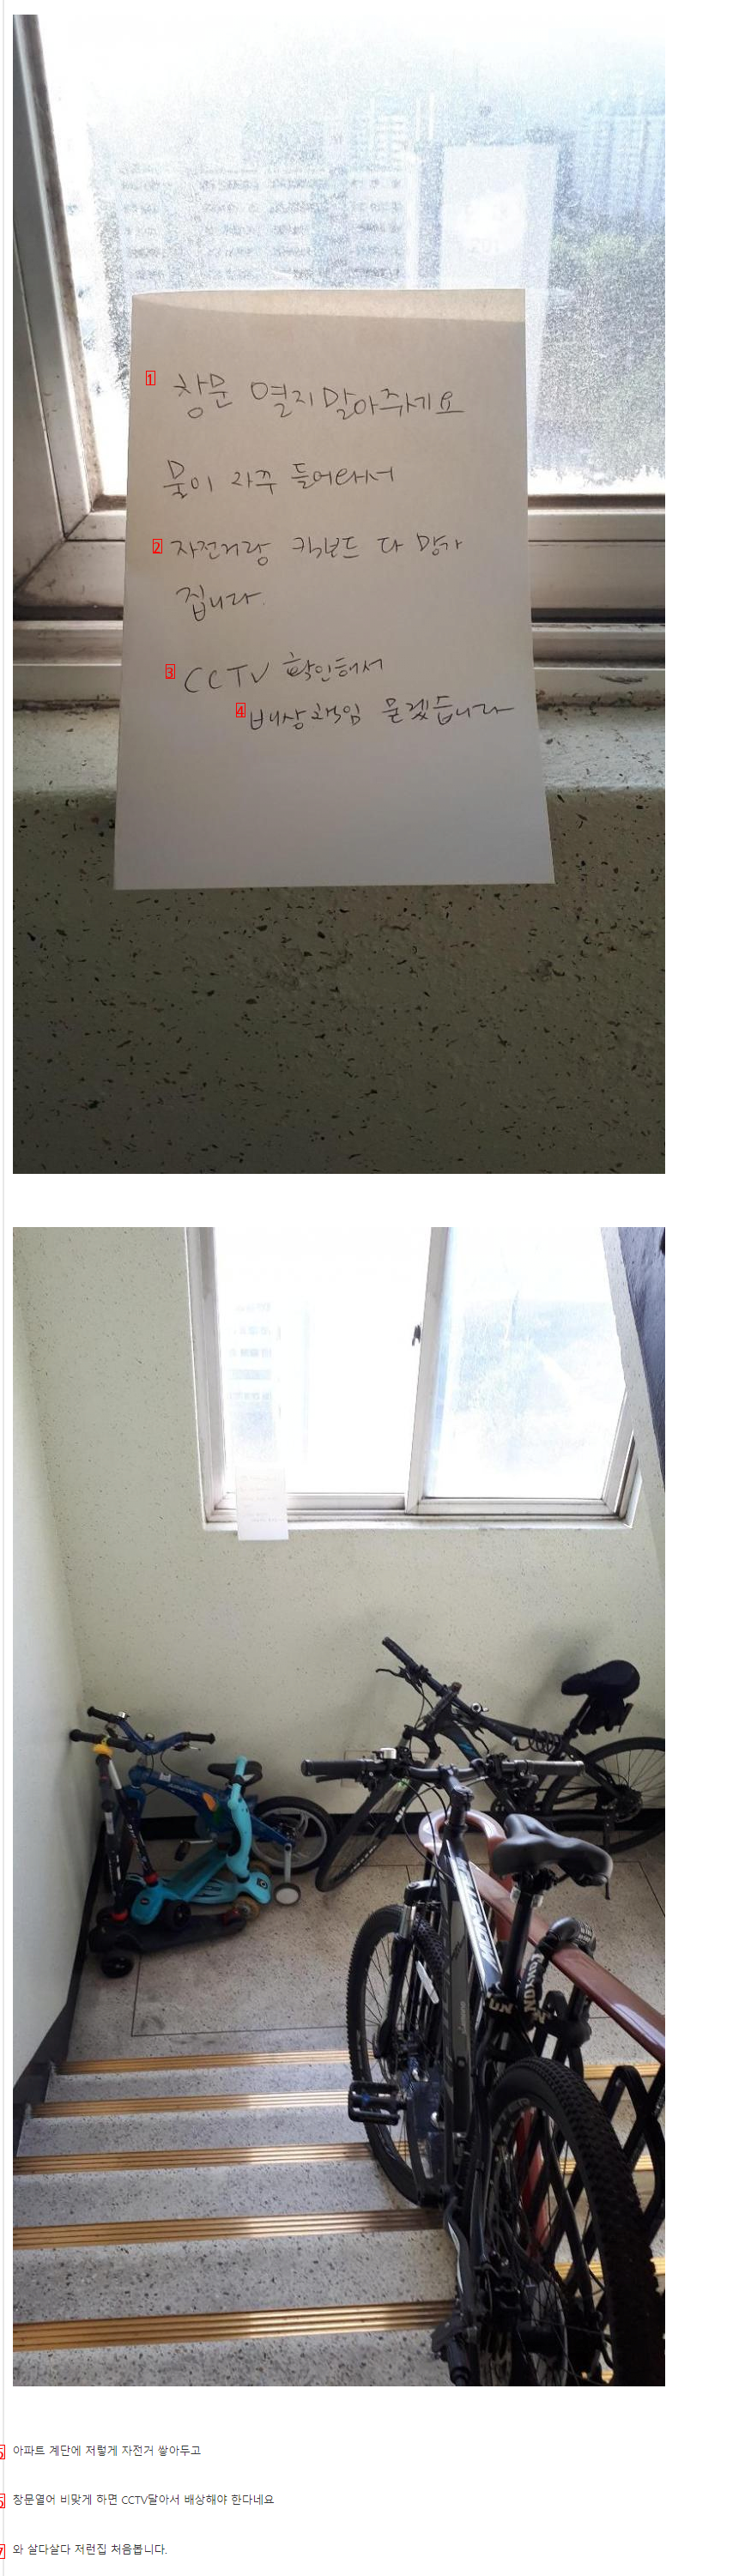 창문 열면 배상책임 한다는 아파트